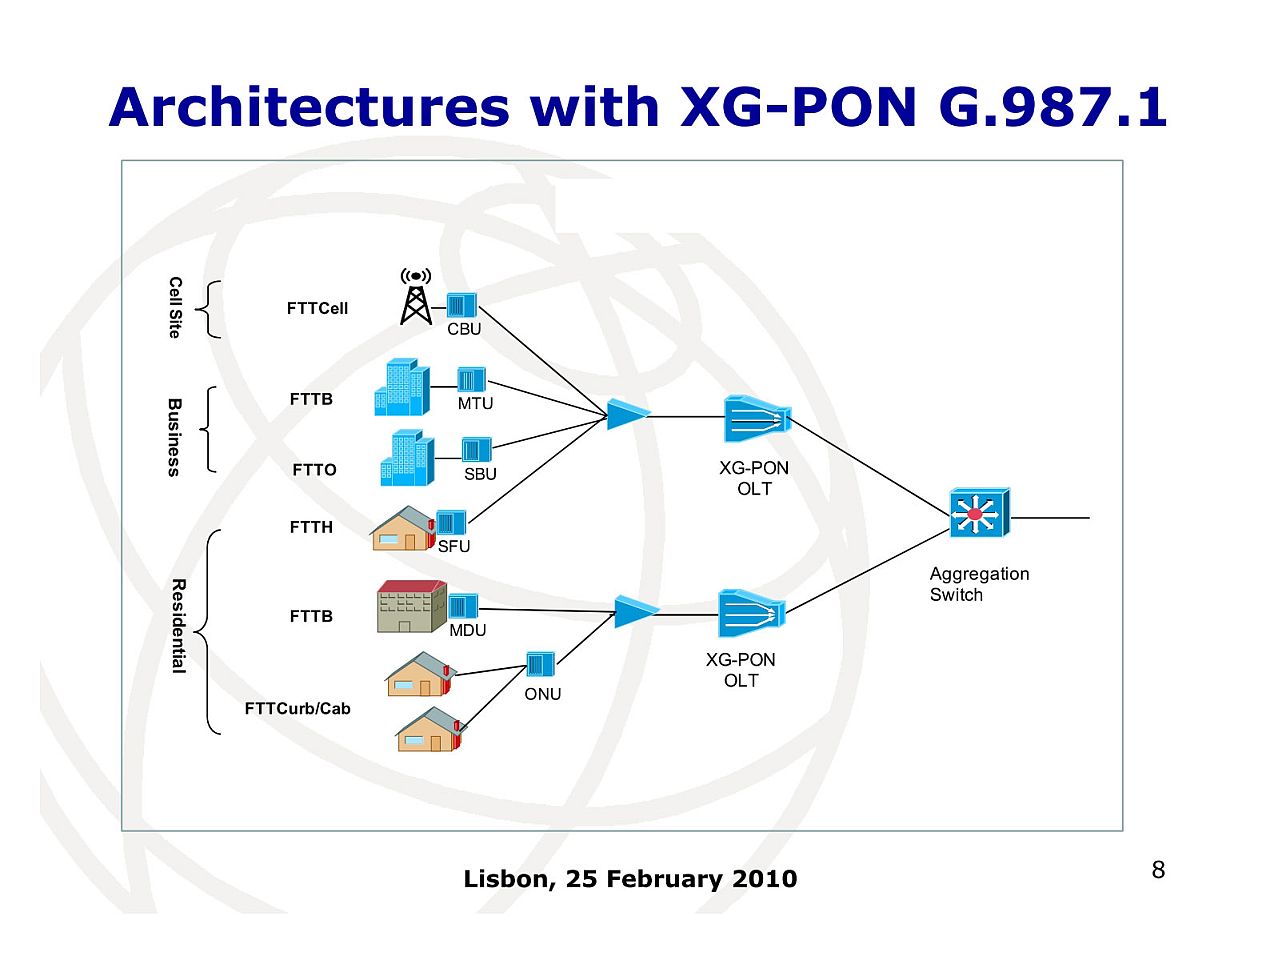 アクセス回線10Gbpsへの道】（第6回）10Gbpsのアクセス回線規格「XG-PON」、NURO光  10Gに採用、ITUにより「G.987」として標準化【ネット新技術】 - INTERNET Watch